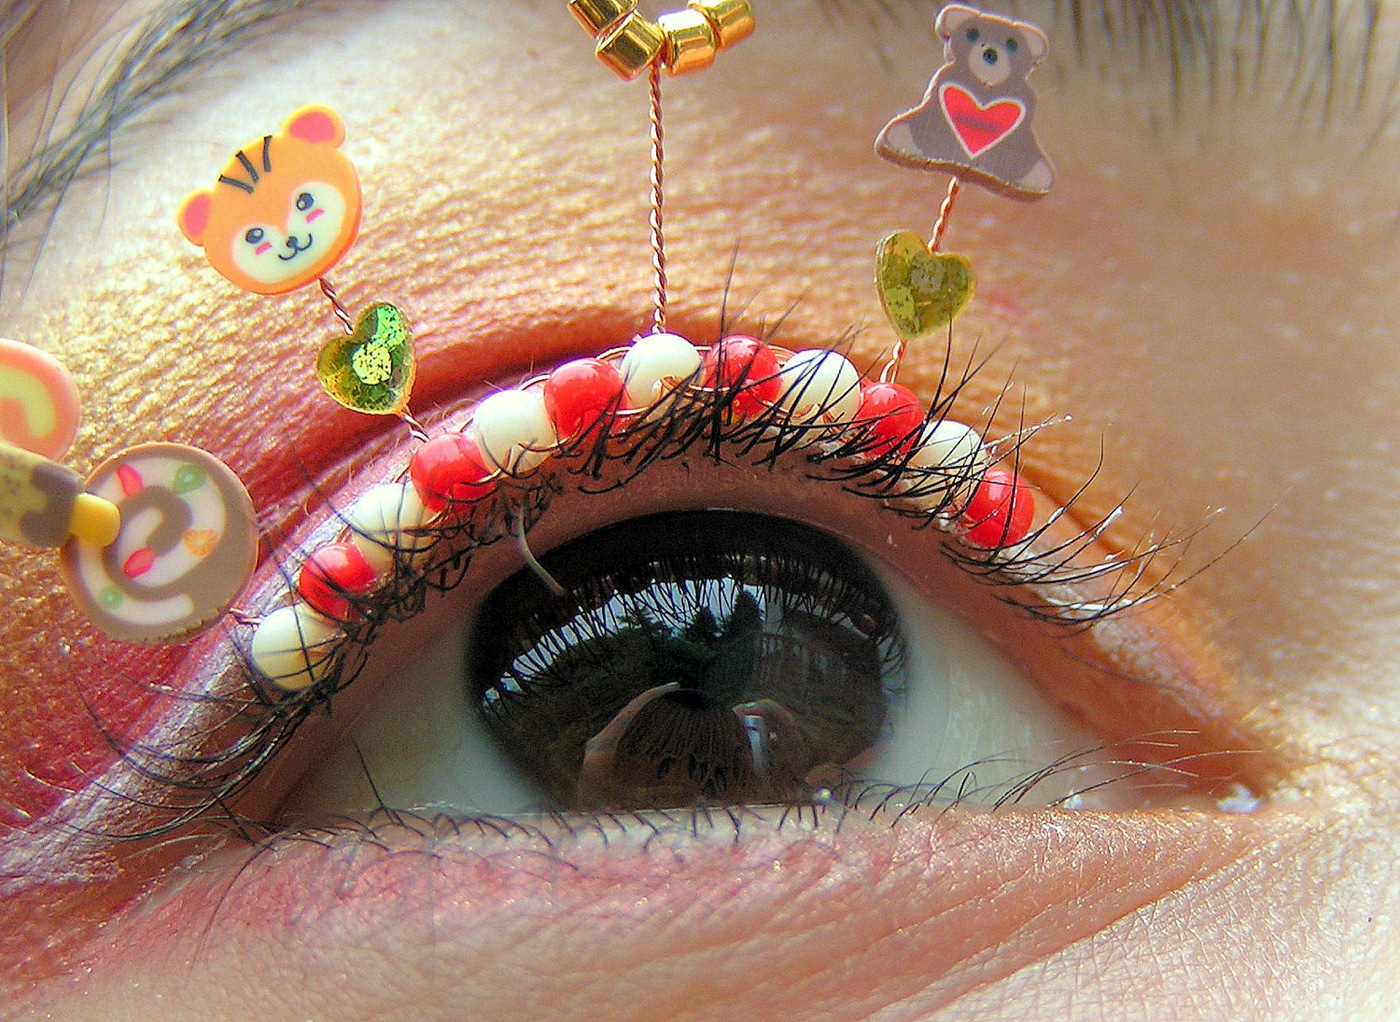 extreme-eyelashes-jewelry-art